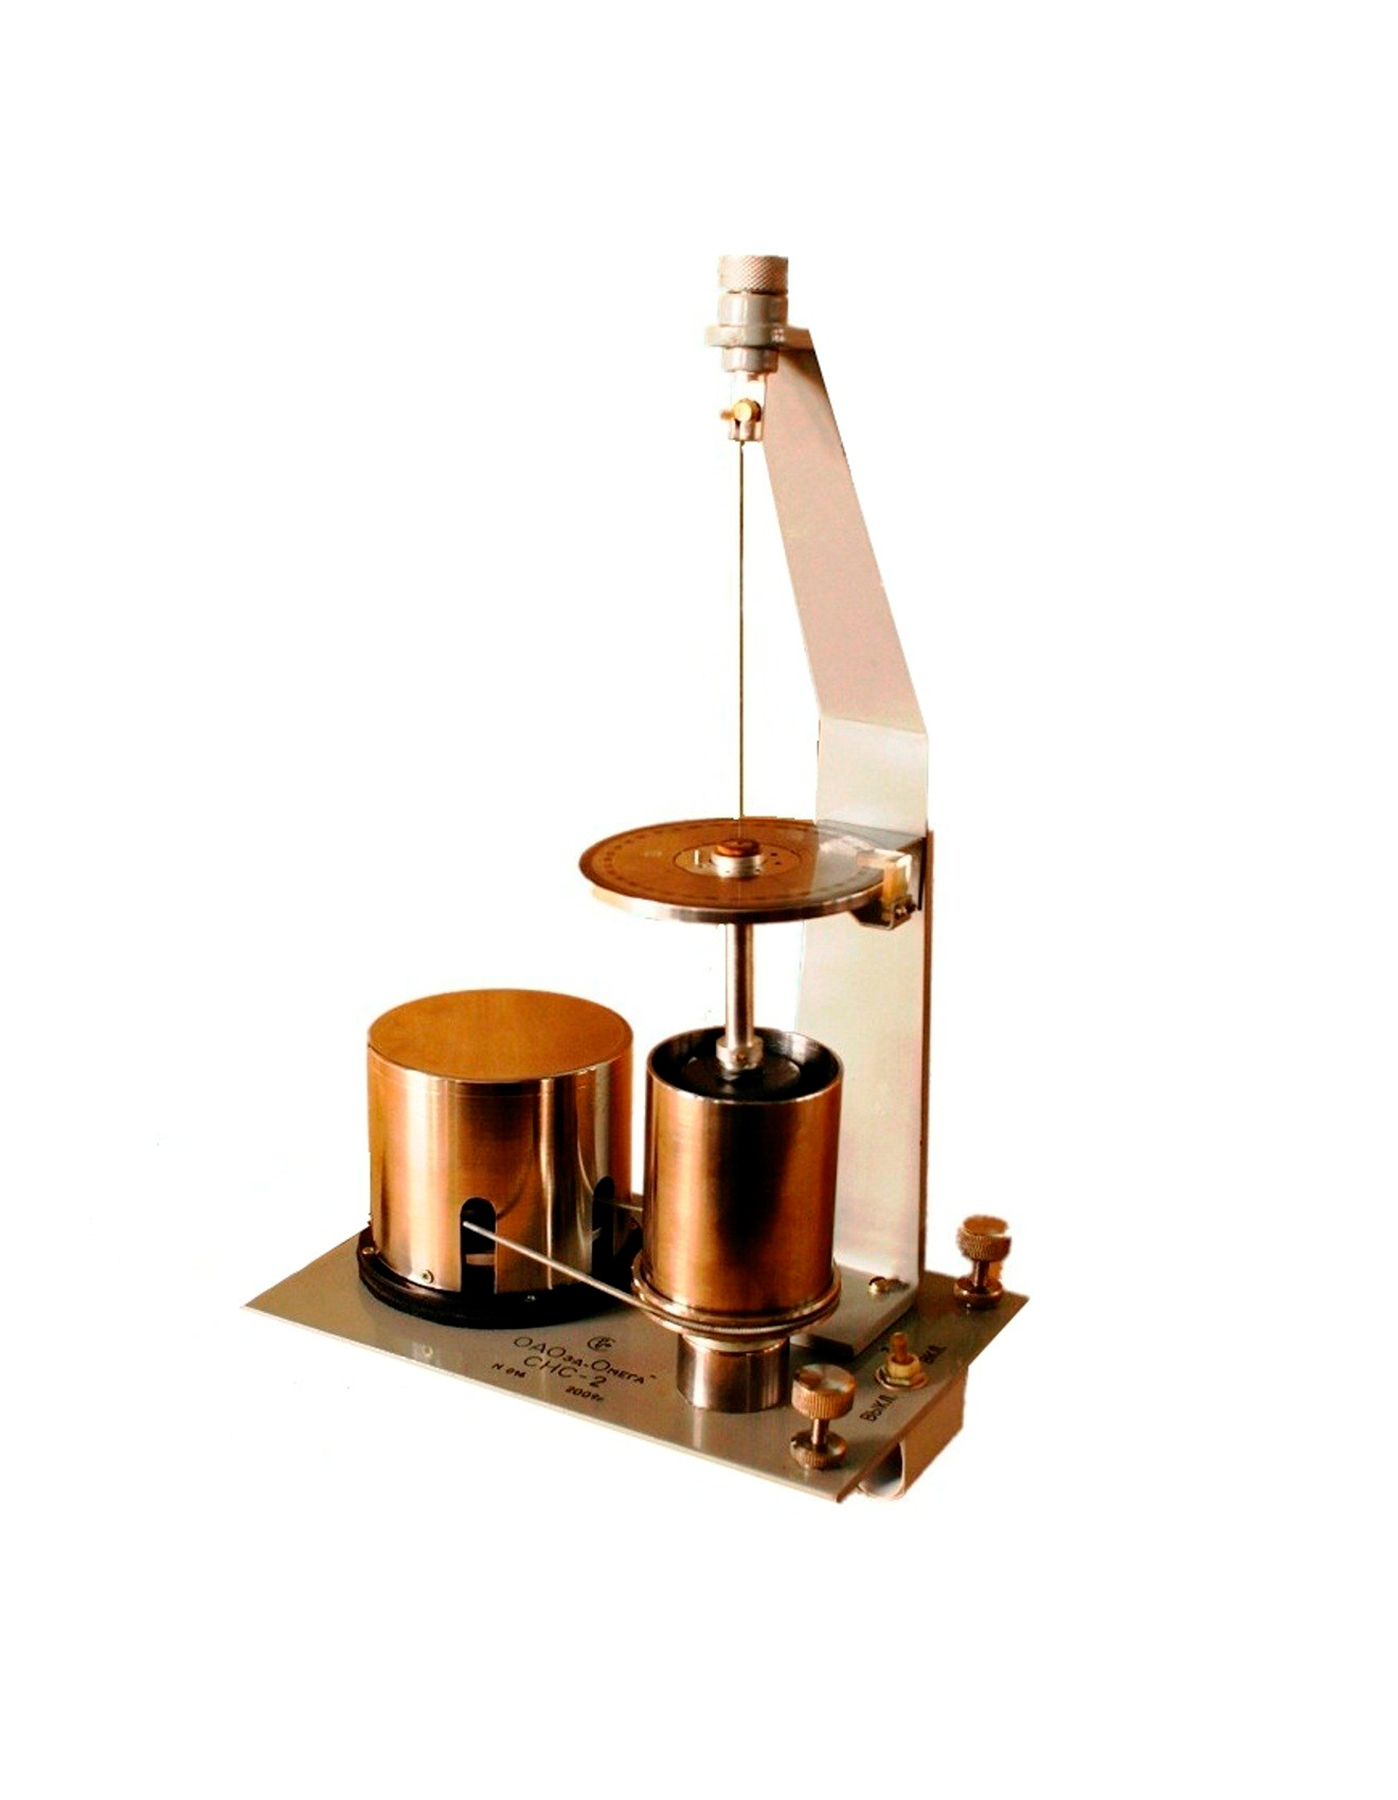 Прибор для измерения статического напряжения сдвига буровых растворов СНЗ-2 для лаборатории